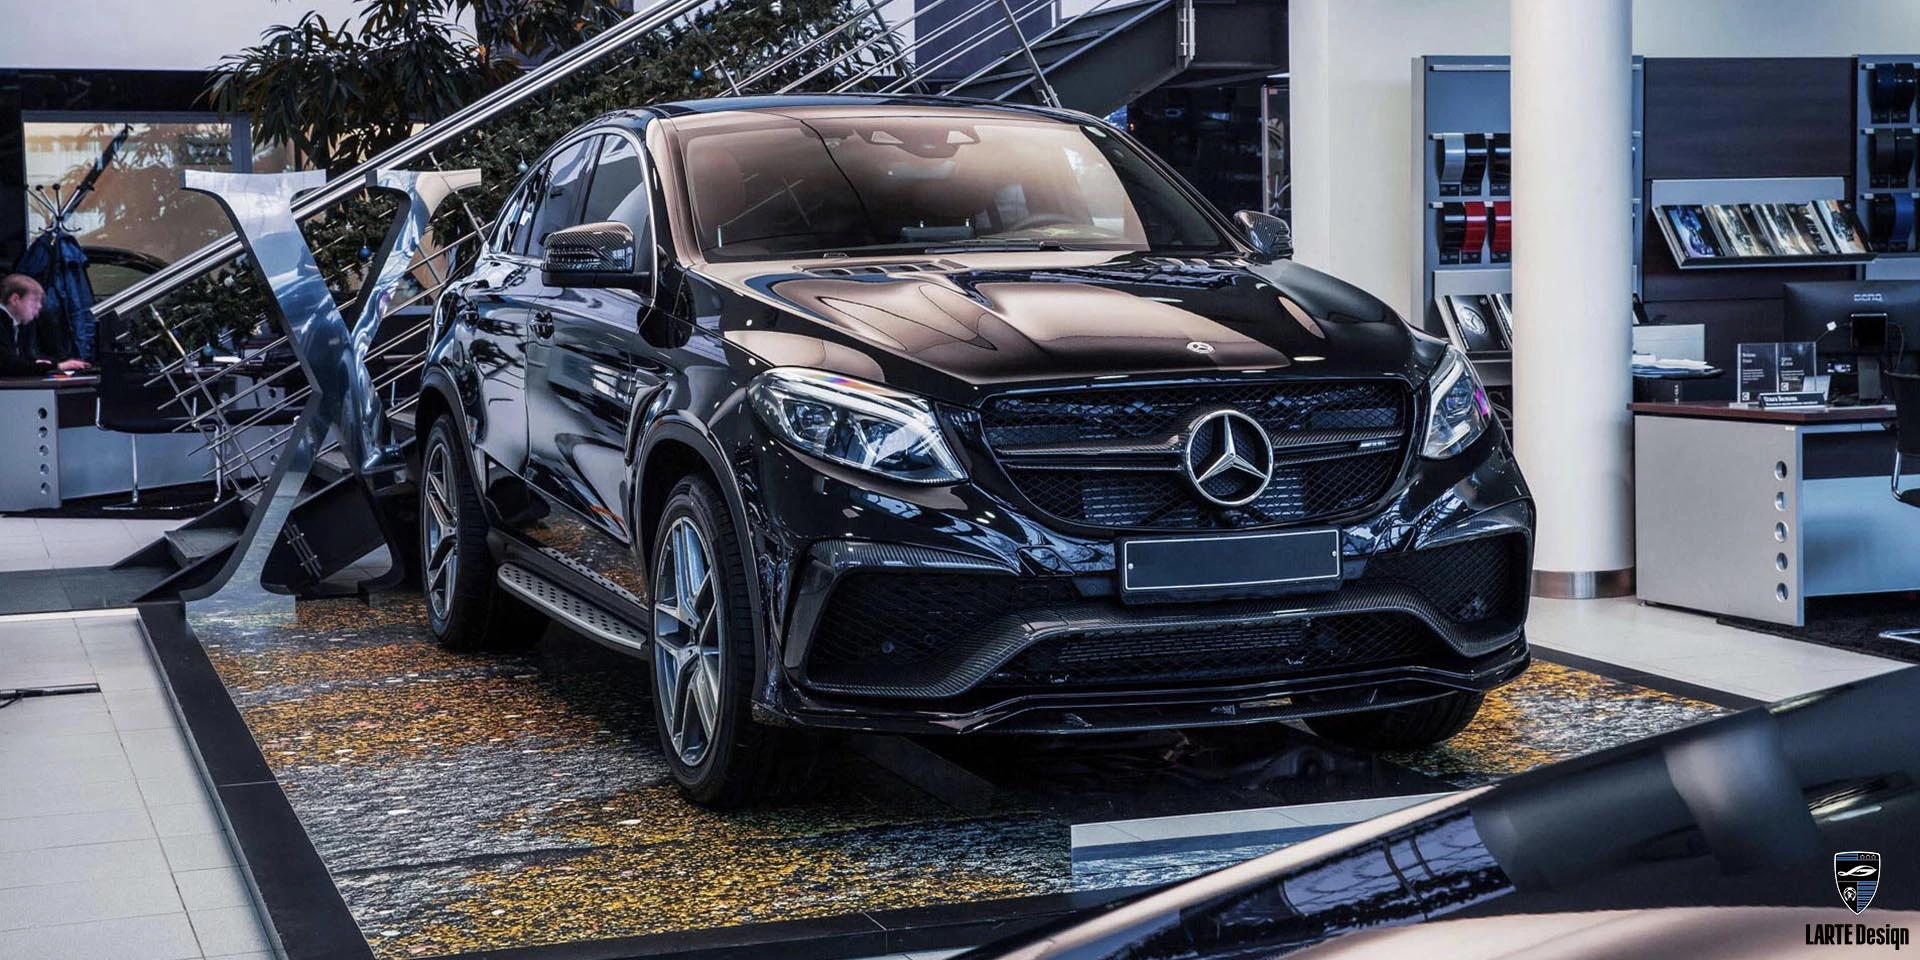 Erwerben Sie einen Frontsplitter aus Kohlefaser für den Mercedes-Benz GLE Coupe GLE 450 4MATIC+ С166 in Obsidianschwarz metallic